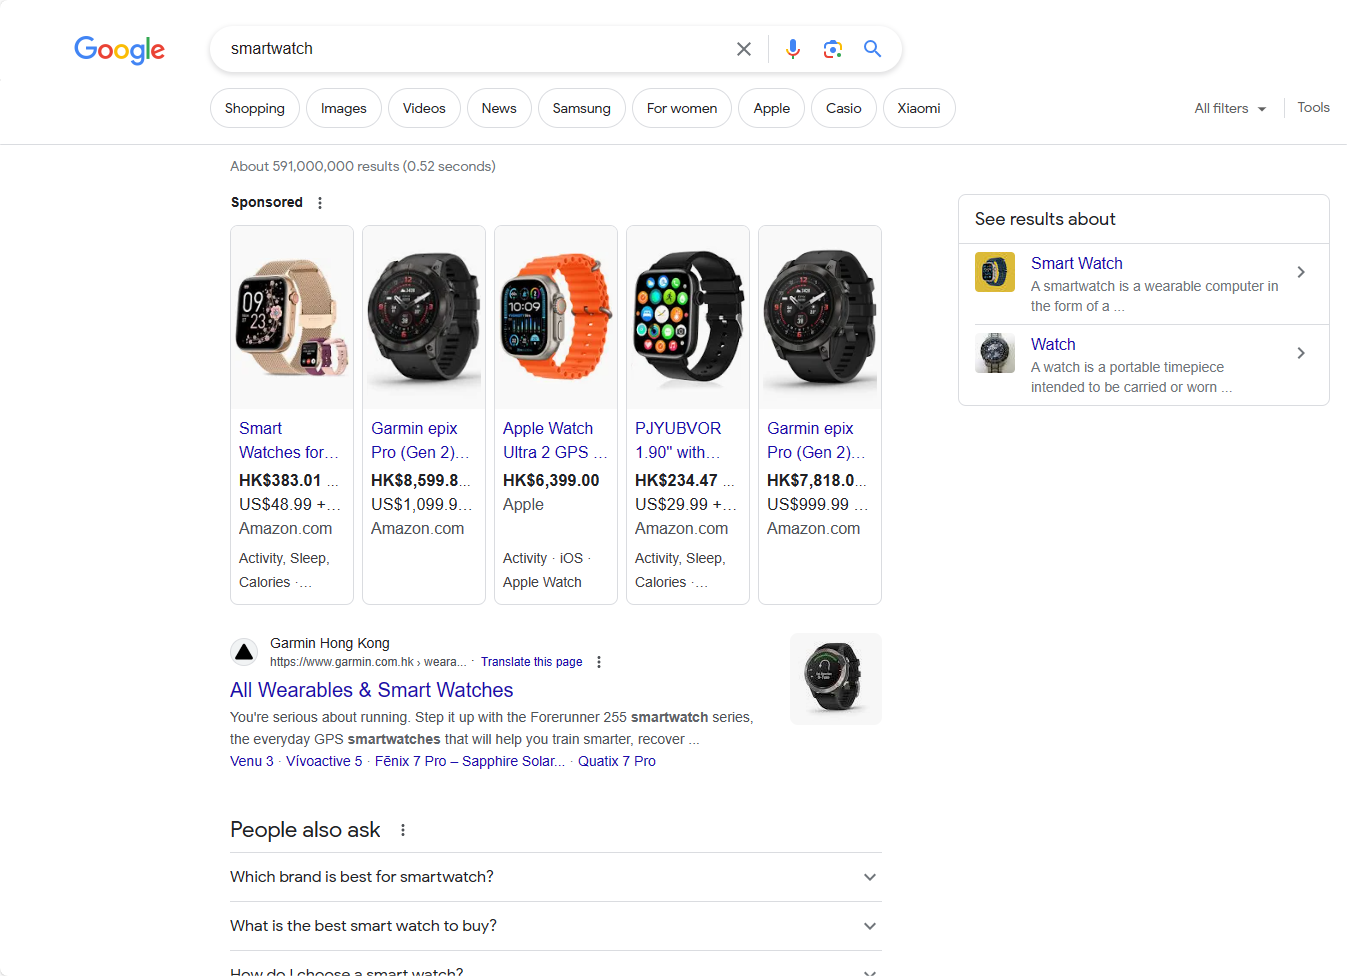 让我们从用户在谷歌搜索引擎上搜索“智能手表”这一场景开始。